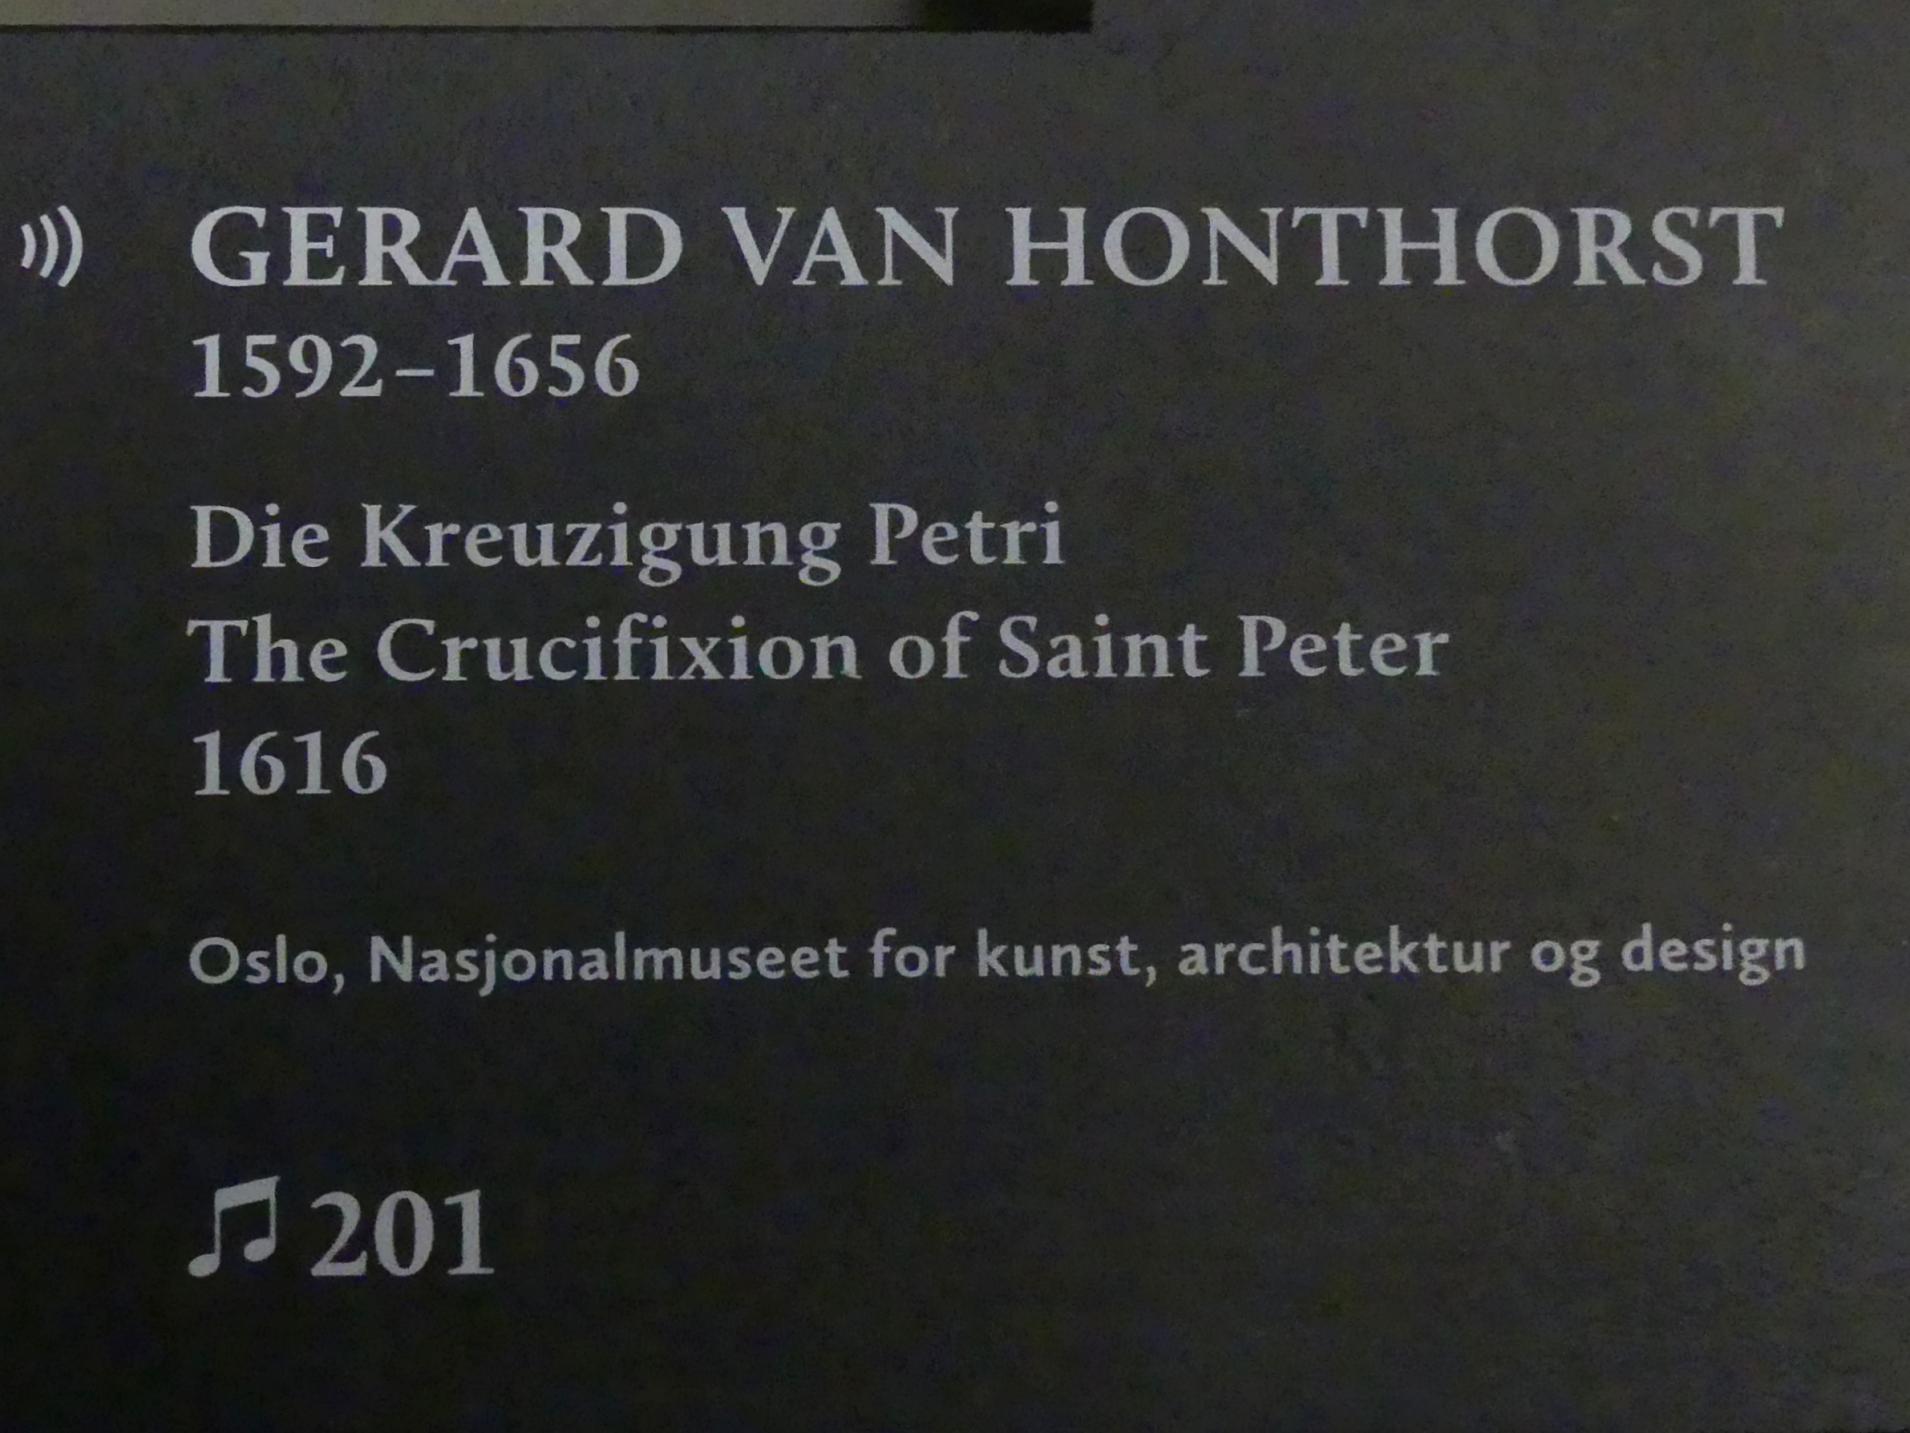 Gerrit van Honthorst (Gerard van Honthorst) (1616–1655), Die Kreuzigung Petri, München, Alte Pinakothek, Ausstellung "Utrecht, Caravaggio und Europa" vom 17.04.-21.07.2019, Einleitung: Kreuzigung Petri, 1616, Bild 2/2